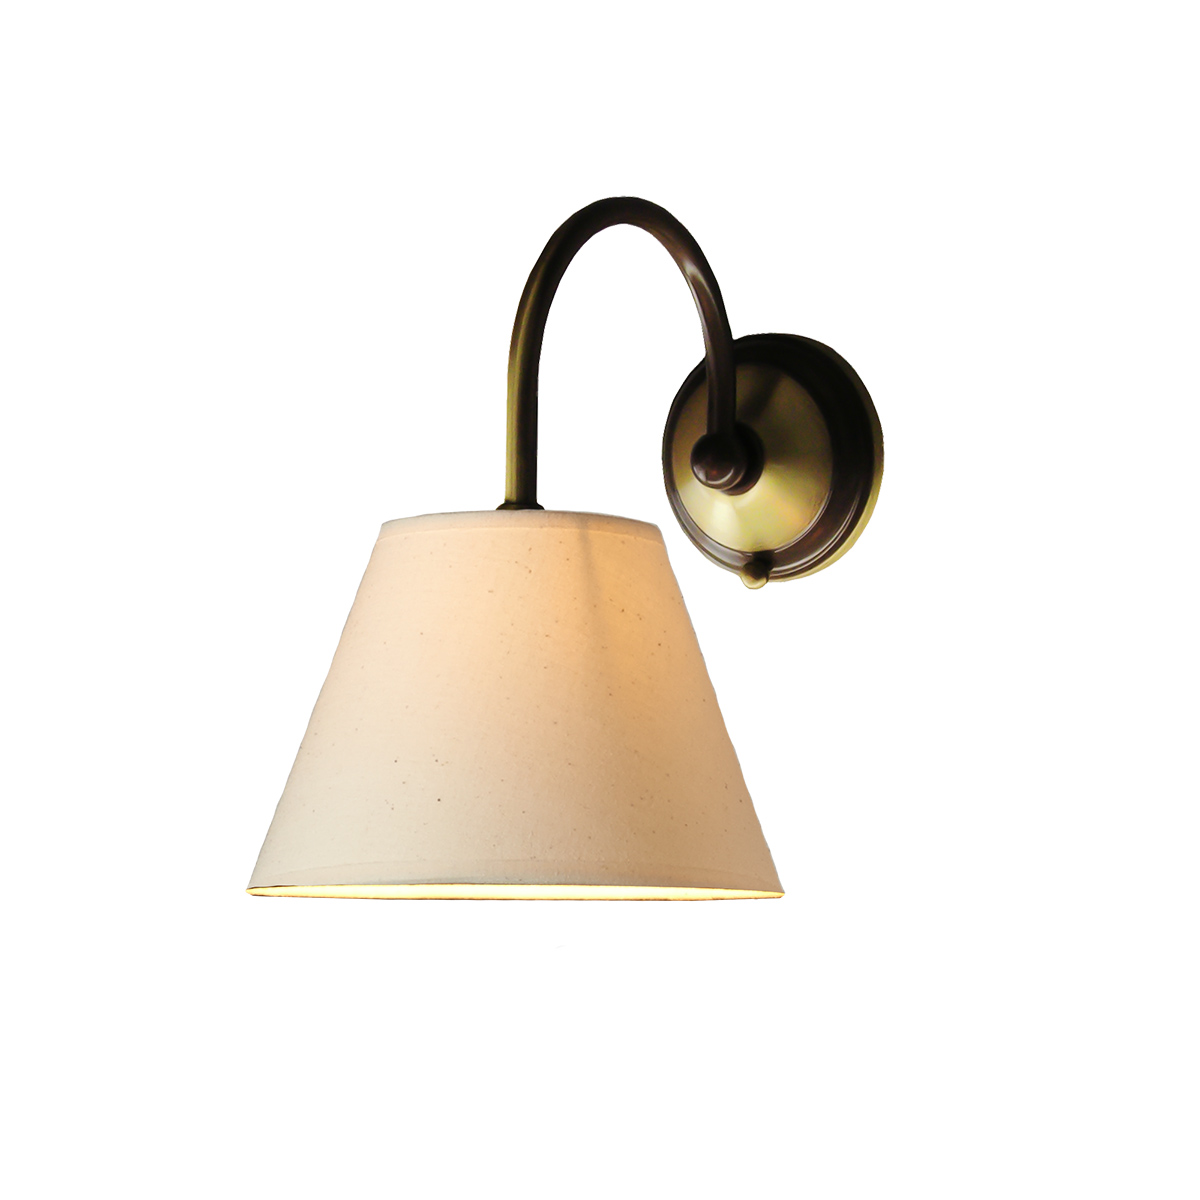 Κλασική απλίκα με καπέλο ΝΑΞΟΣ-1 classic wall lamp with lamp shade